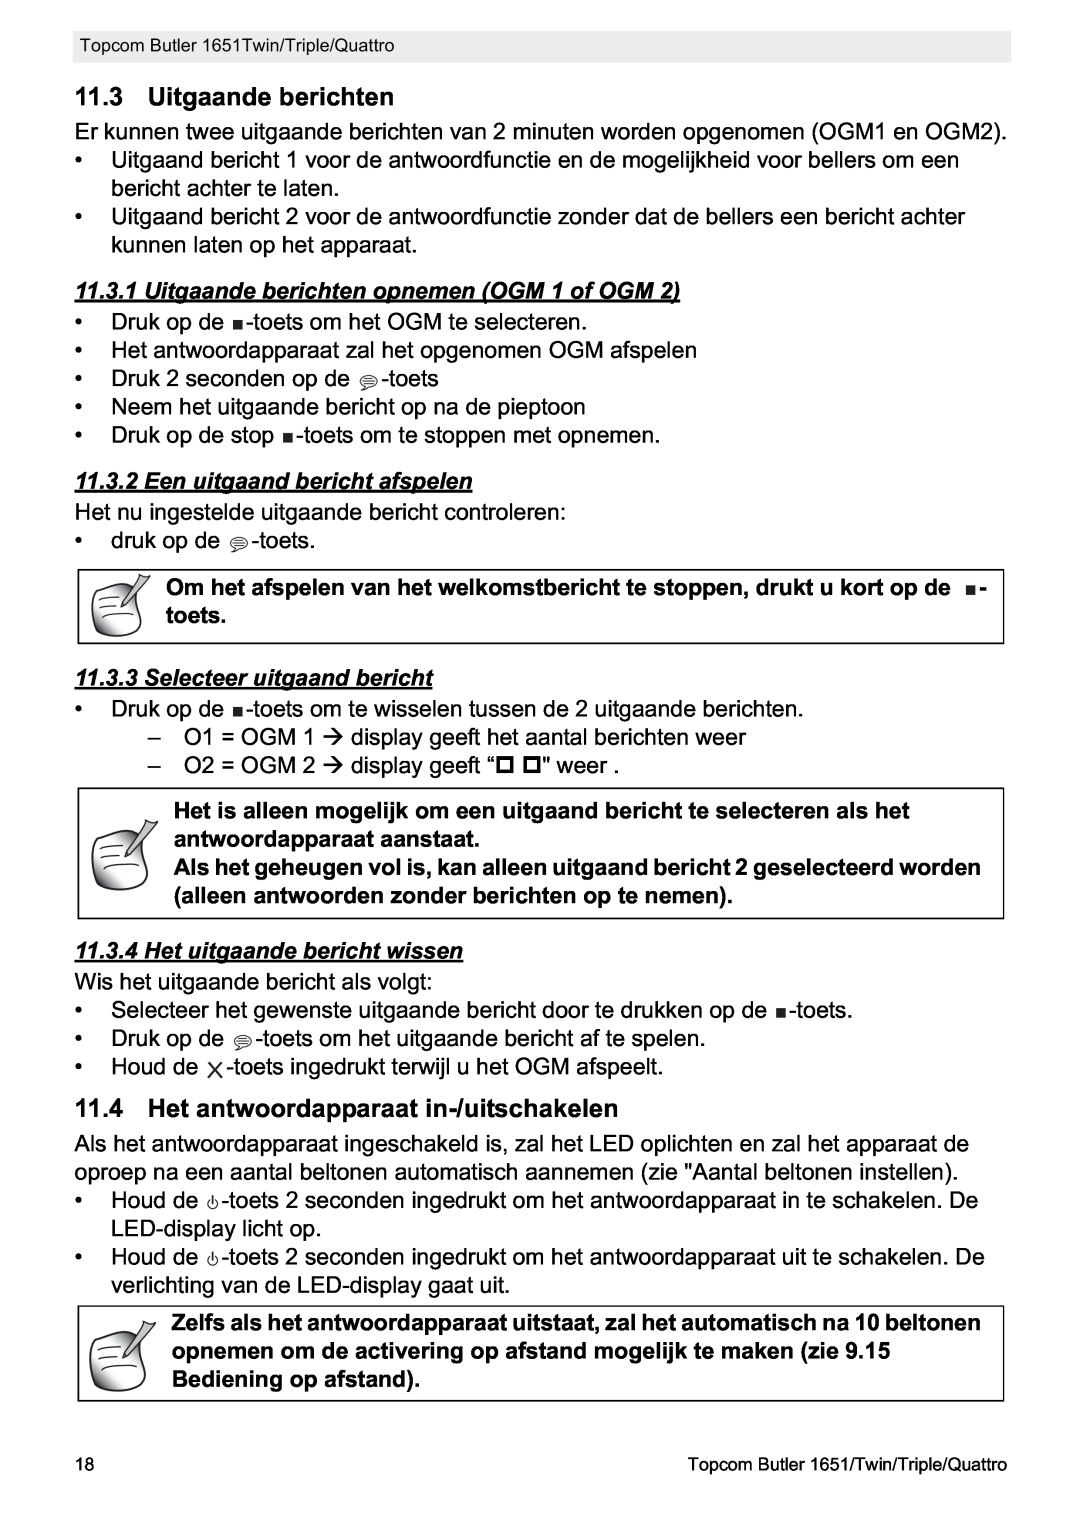 Topcom 1651 manual Het antwoordapparaat in-/uitschakelen, Uitgaande berichten opnemen OGM 1 of OGM 